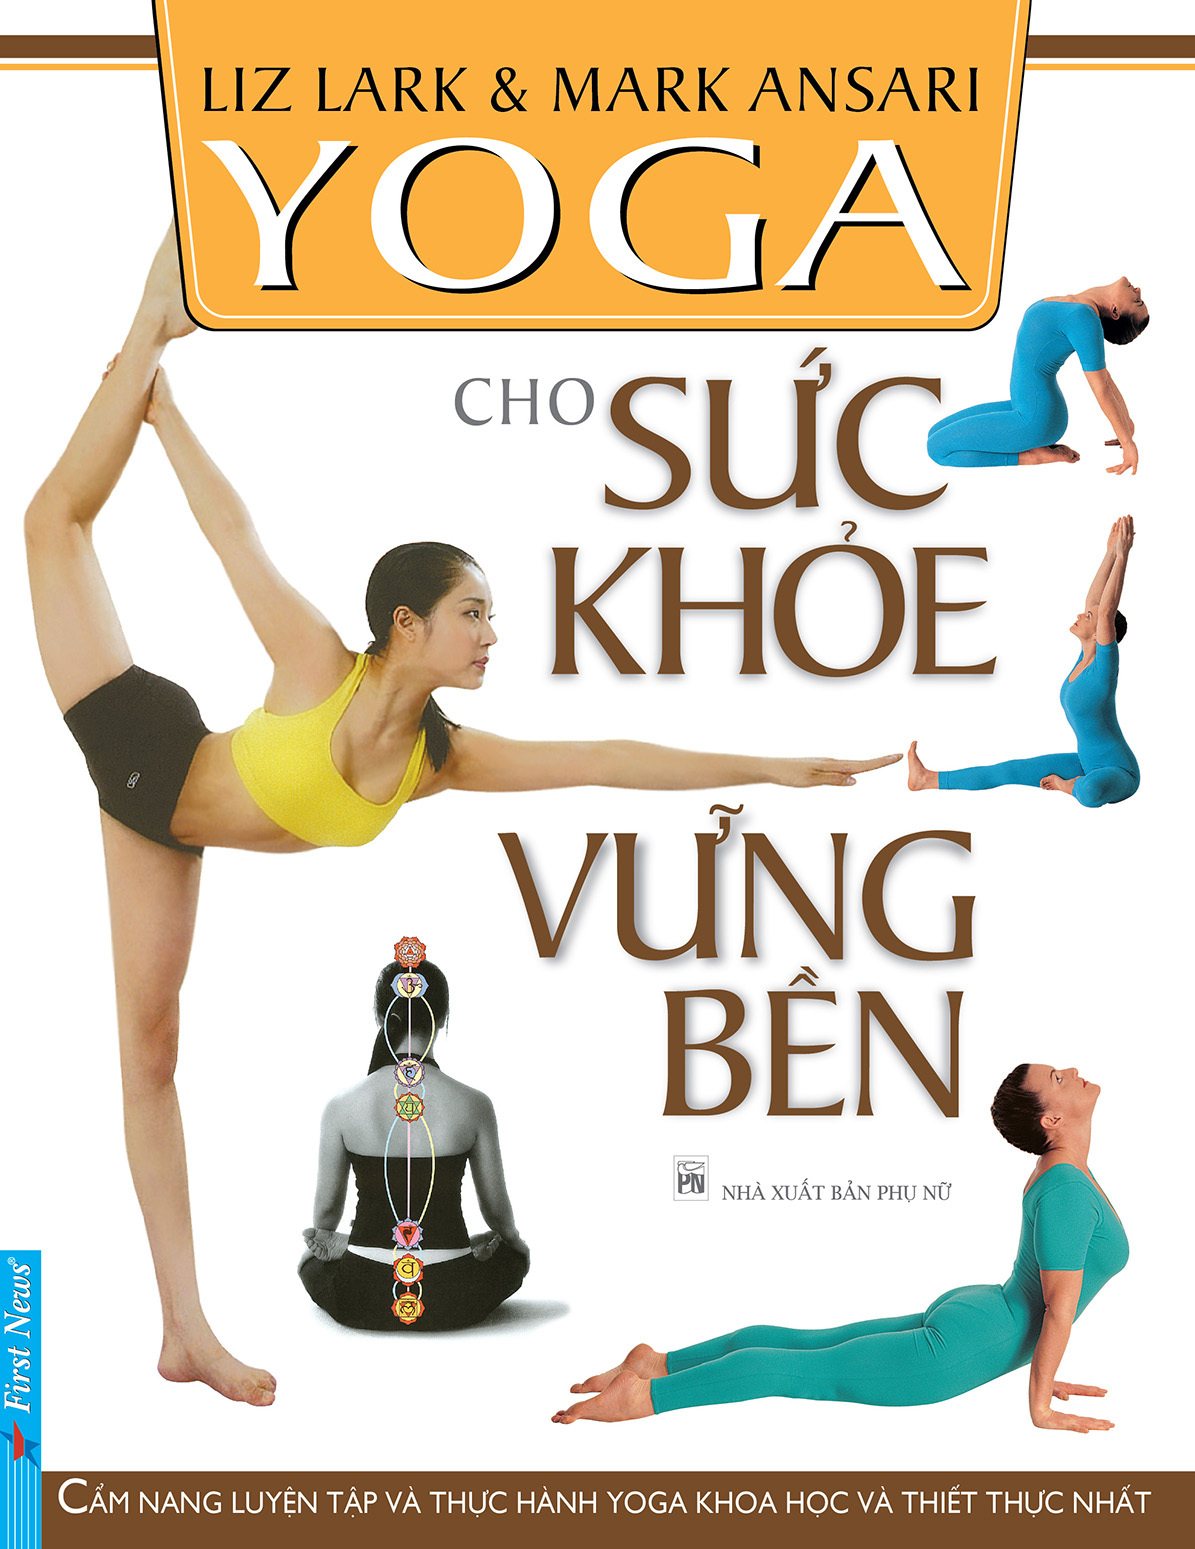 Yoga cho sức khỏe bền vững